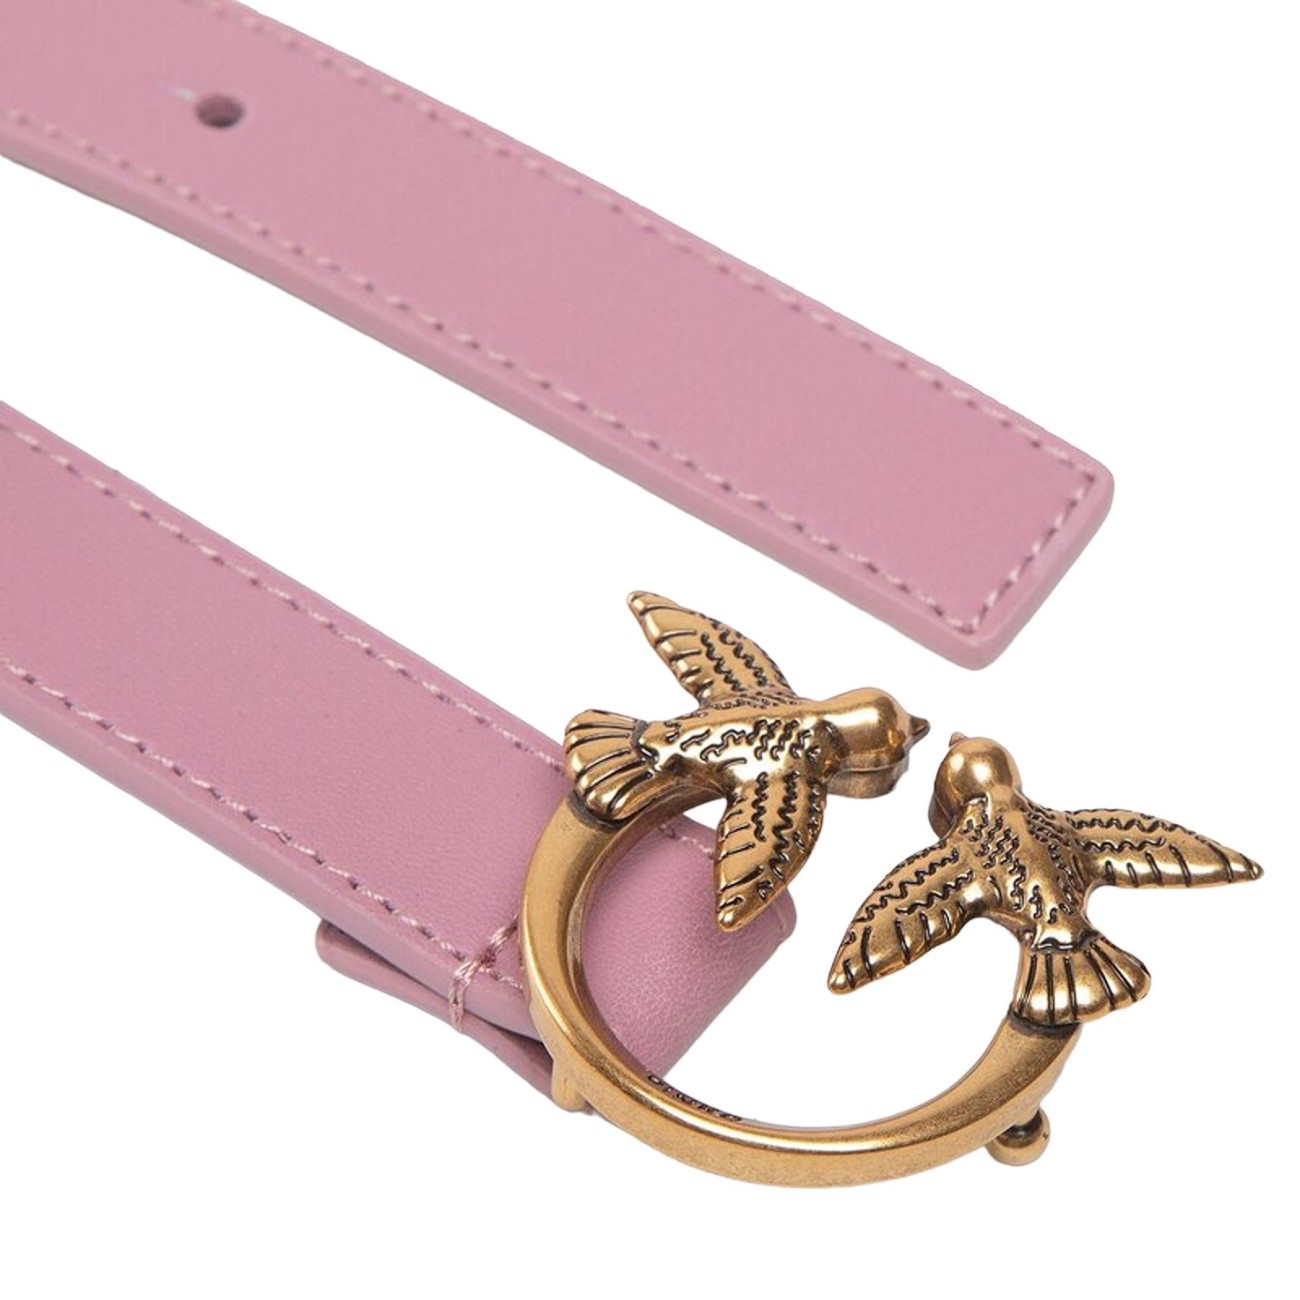 Pinko women's belt in lilac...